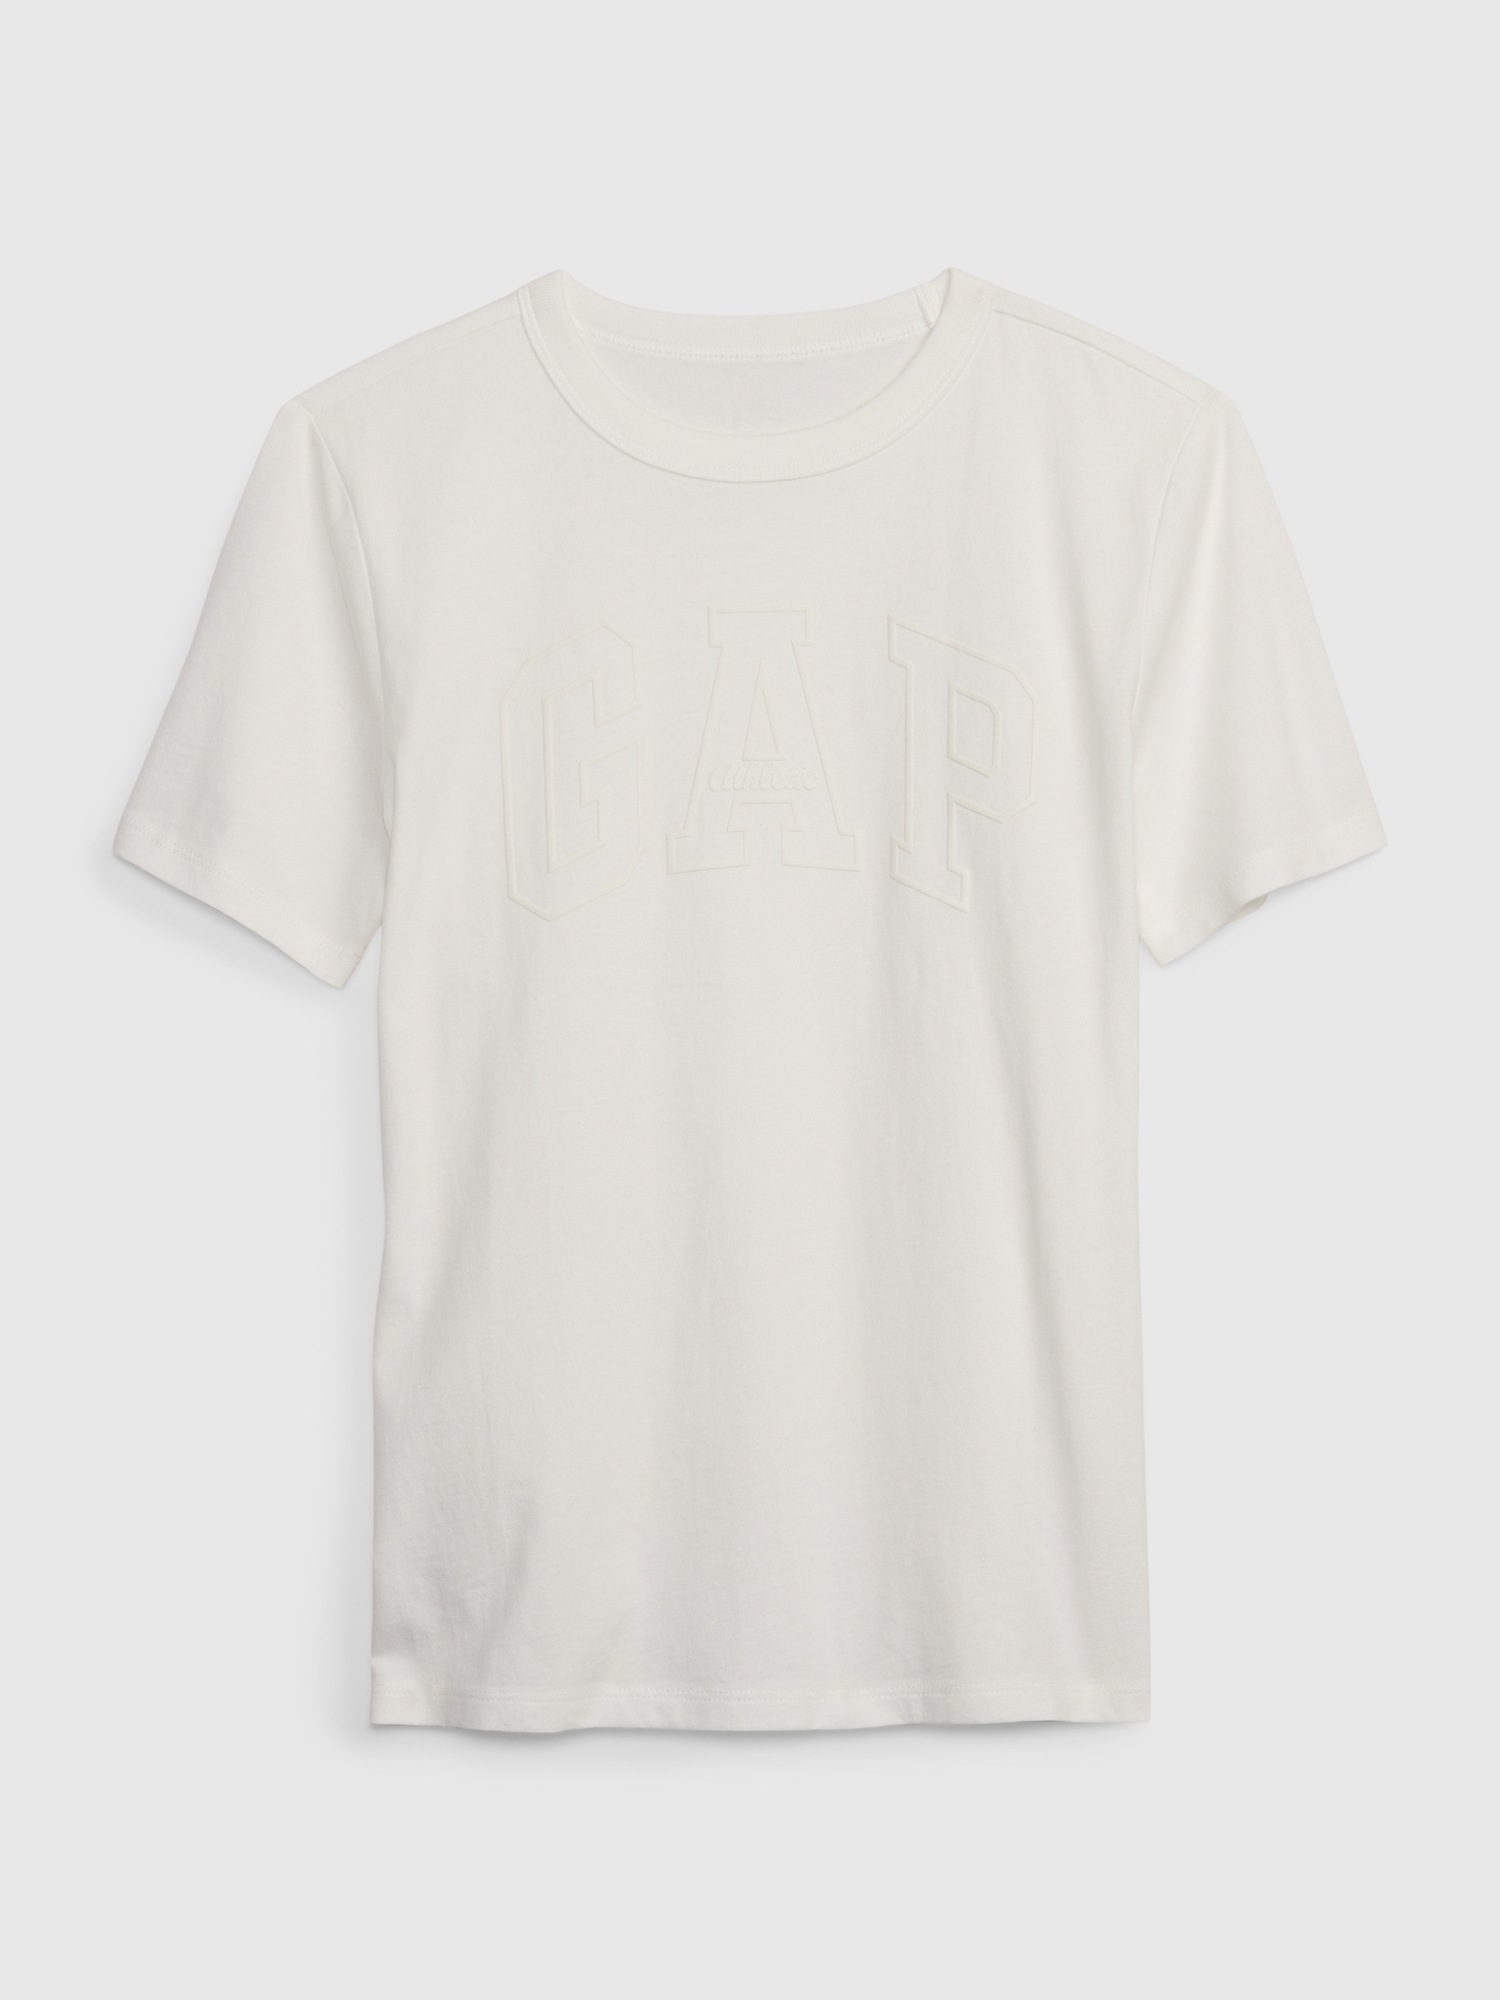 Kids Organic Cotton Gap Logo T-Shirt | Gap